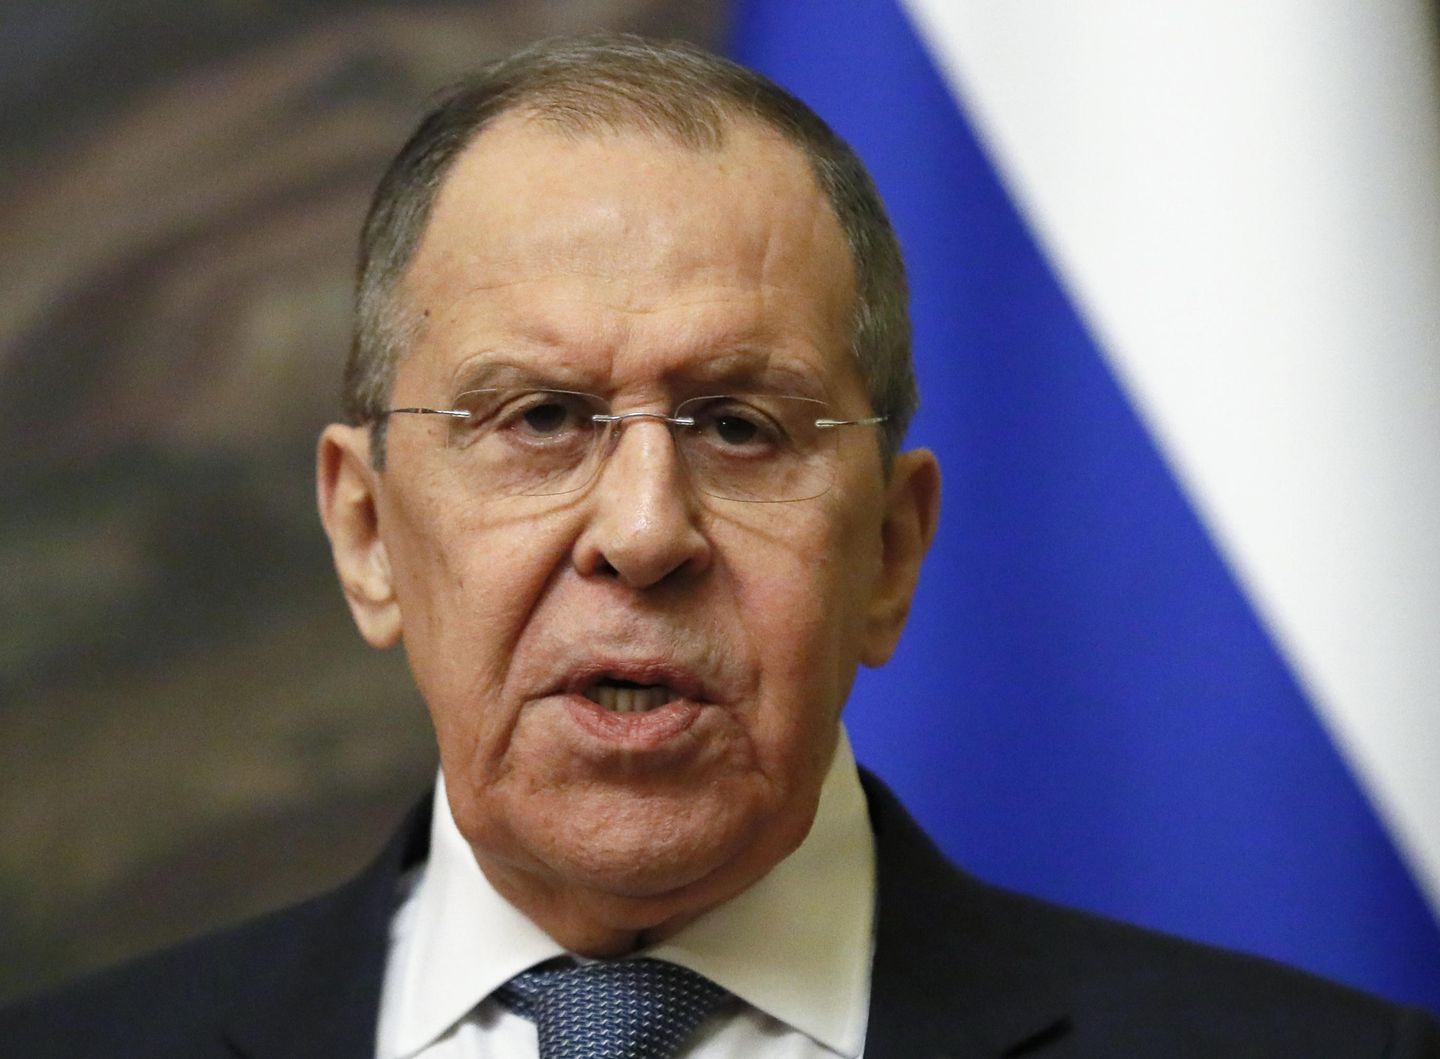 İsrail, Lavrov'un Nazizm açıklamaları üzerine Rusya'ya ateş püskürdü